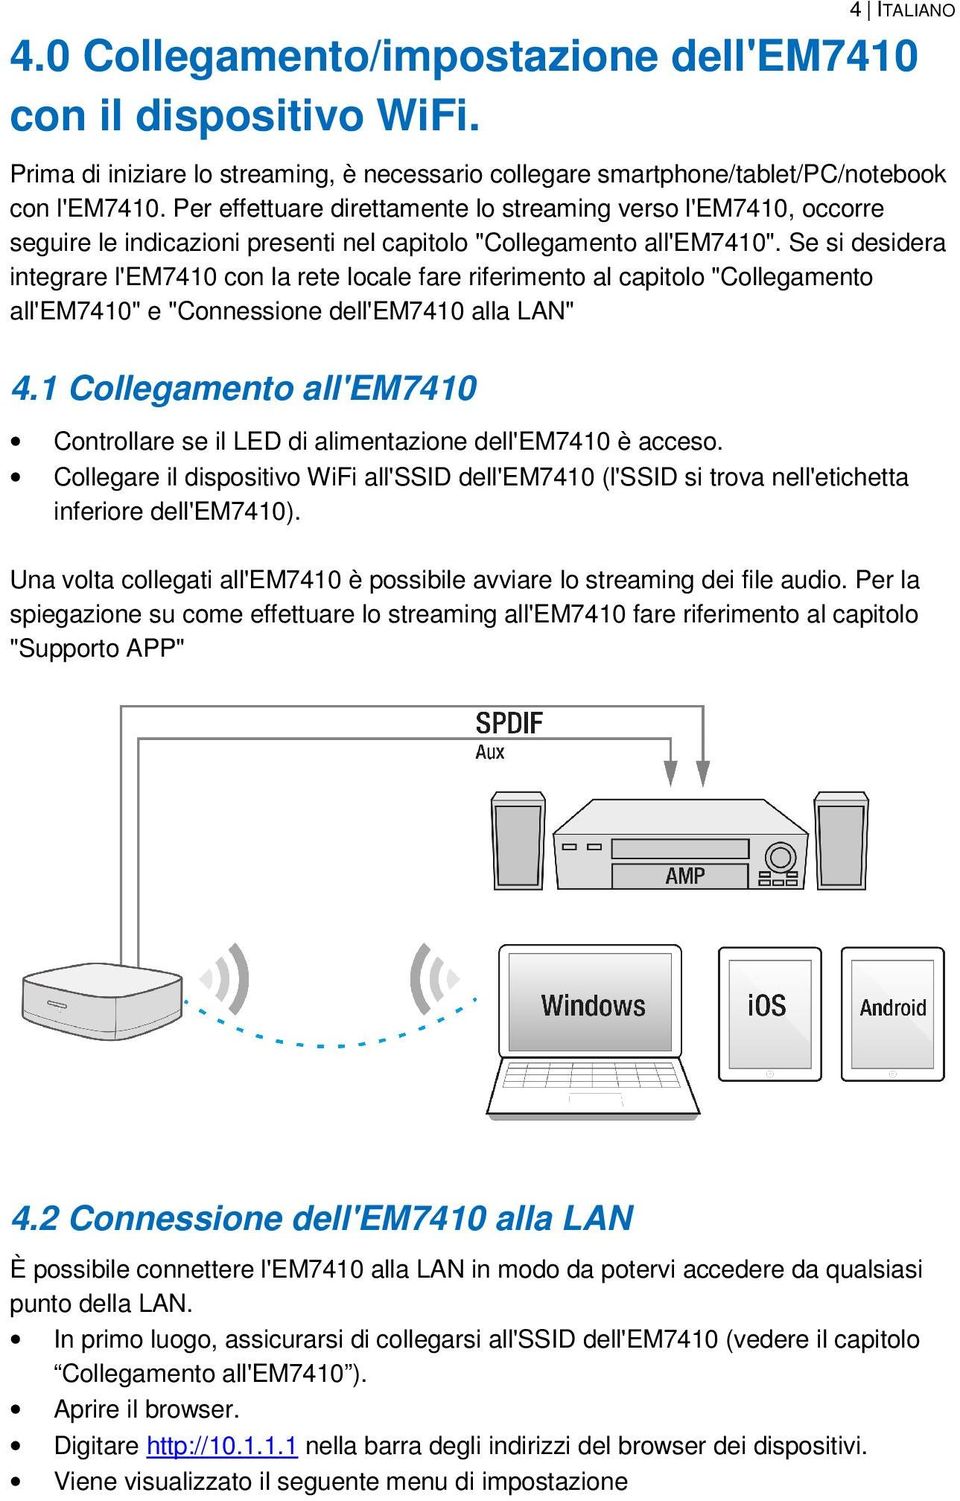 Se si desidera integrare l'em7410 con la rete locale fare riferimento al capitolo "Collegamento all'em7410" e "Connessione dell'em7410 alla LAN" 4.